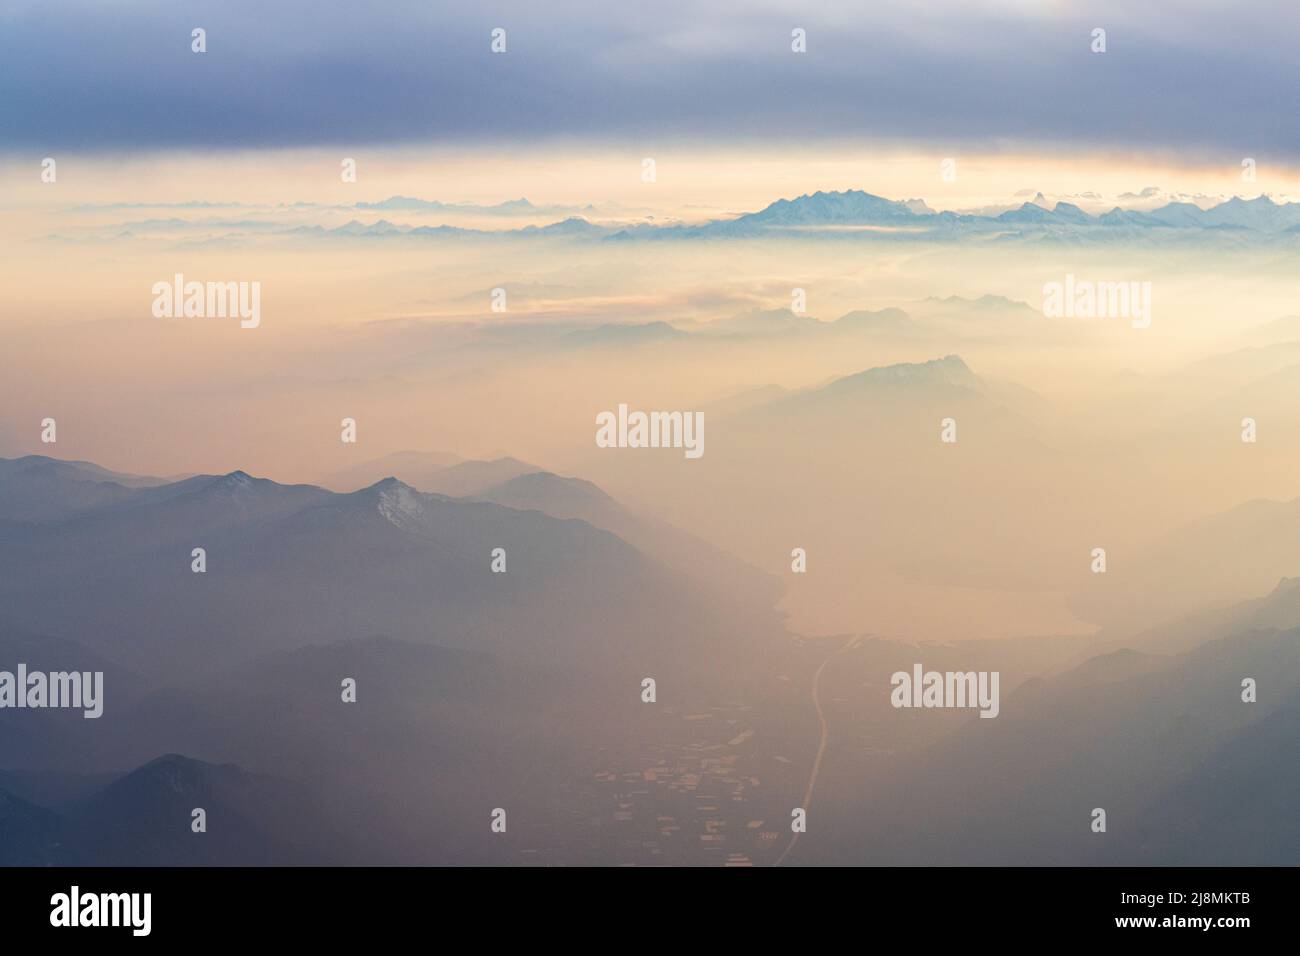 La ciudad suiza de Locarno, el lago Maggiore y Monte Rosa se encuentran en el pico de la niebla al atardecer desde la ventana del avión, los Alpes Lepontinos, Suiza Foto de stock